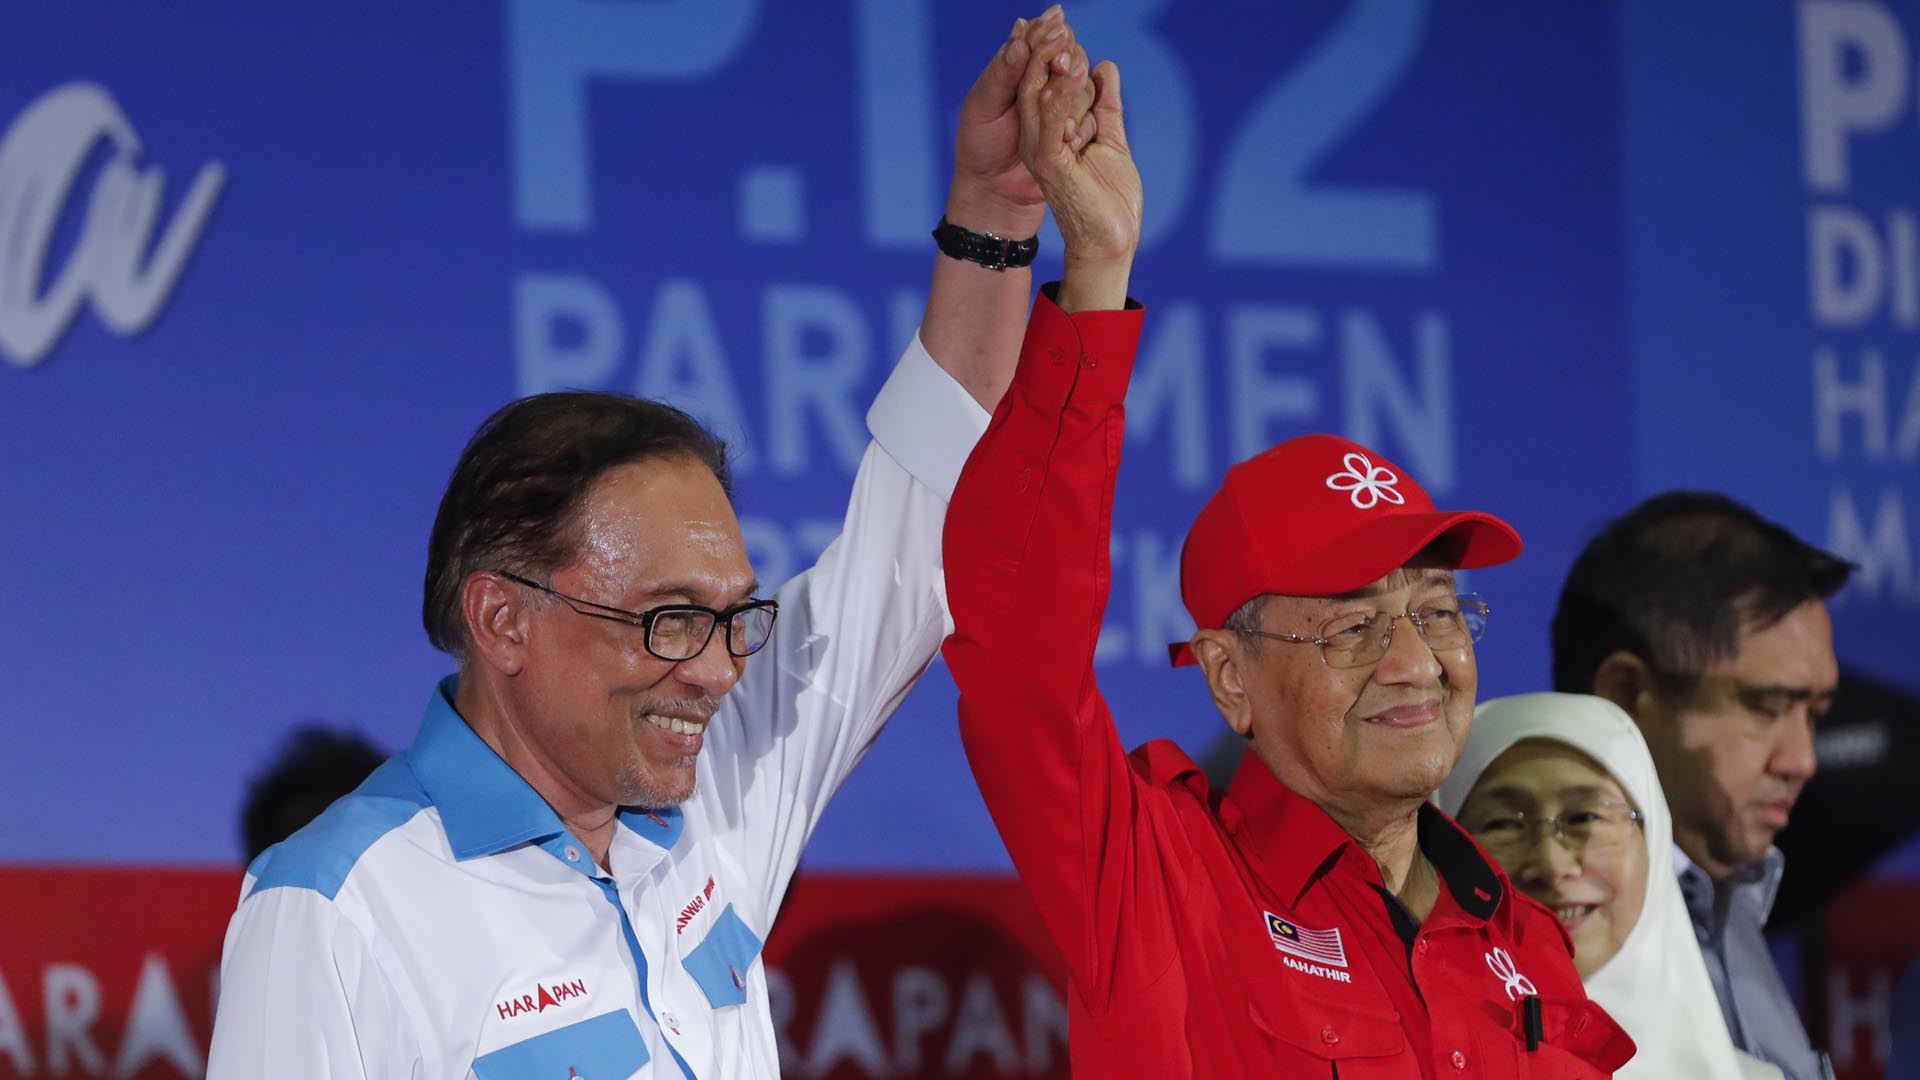 ARCHIVO- El entonces primer ministro Mahathir Mohamad, a la derecha, levanta la mano del ícono de la reforma Anwar Ibrahim durante un mitin en Port Dickson, Malasia, el 8 de octubre de 2018.  (Foto AP/Vincent Thian, archivo)
